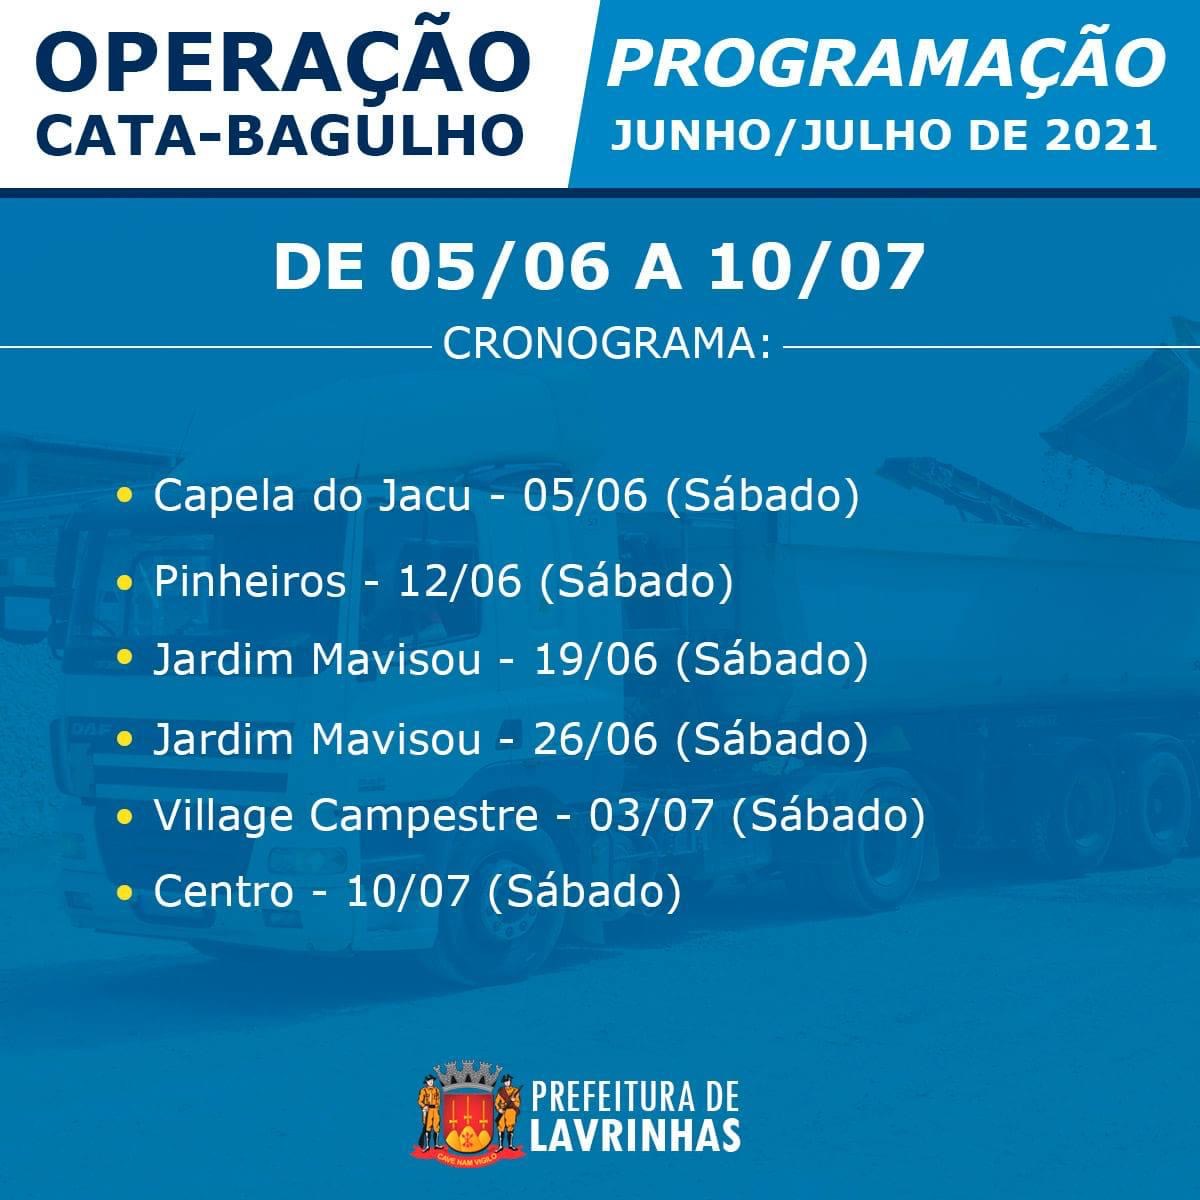 No próximo mês, Lavrinhas irá realizar a Operação Cata-bagulho em todo o município